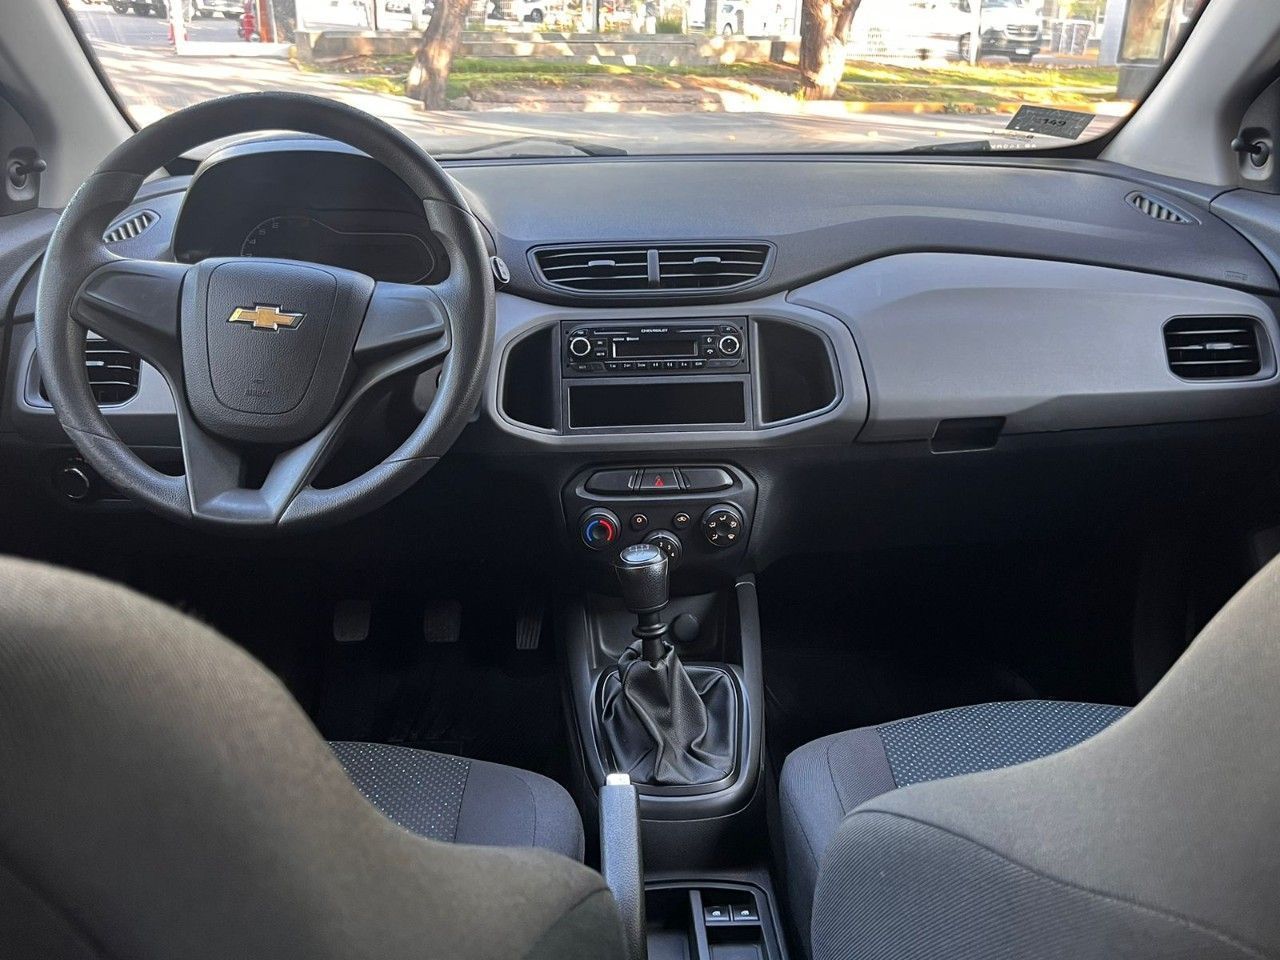 Chevrolet Onix Usado en Mendoza, deRuedas